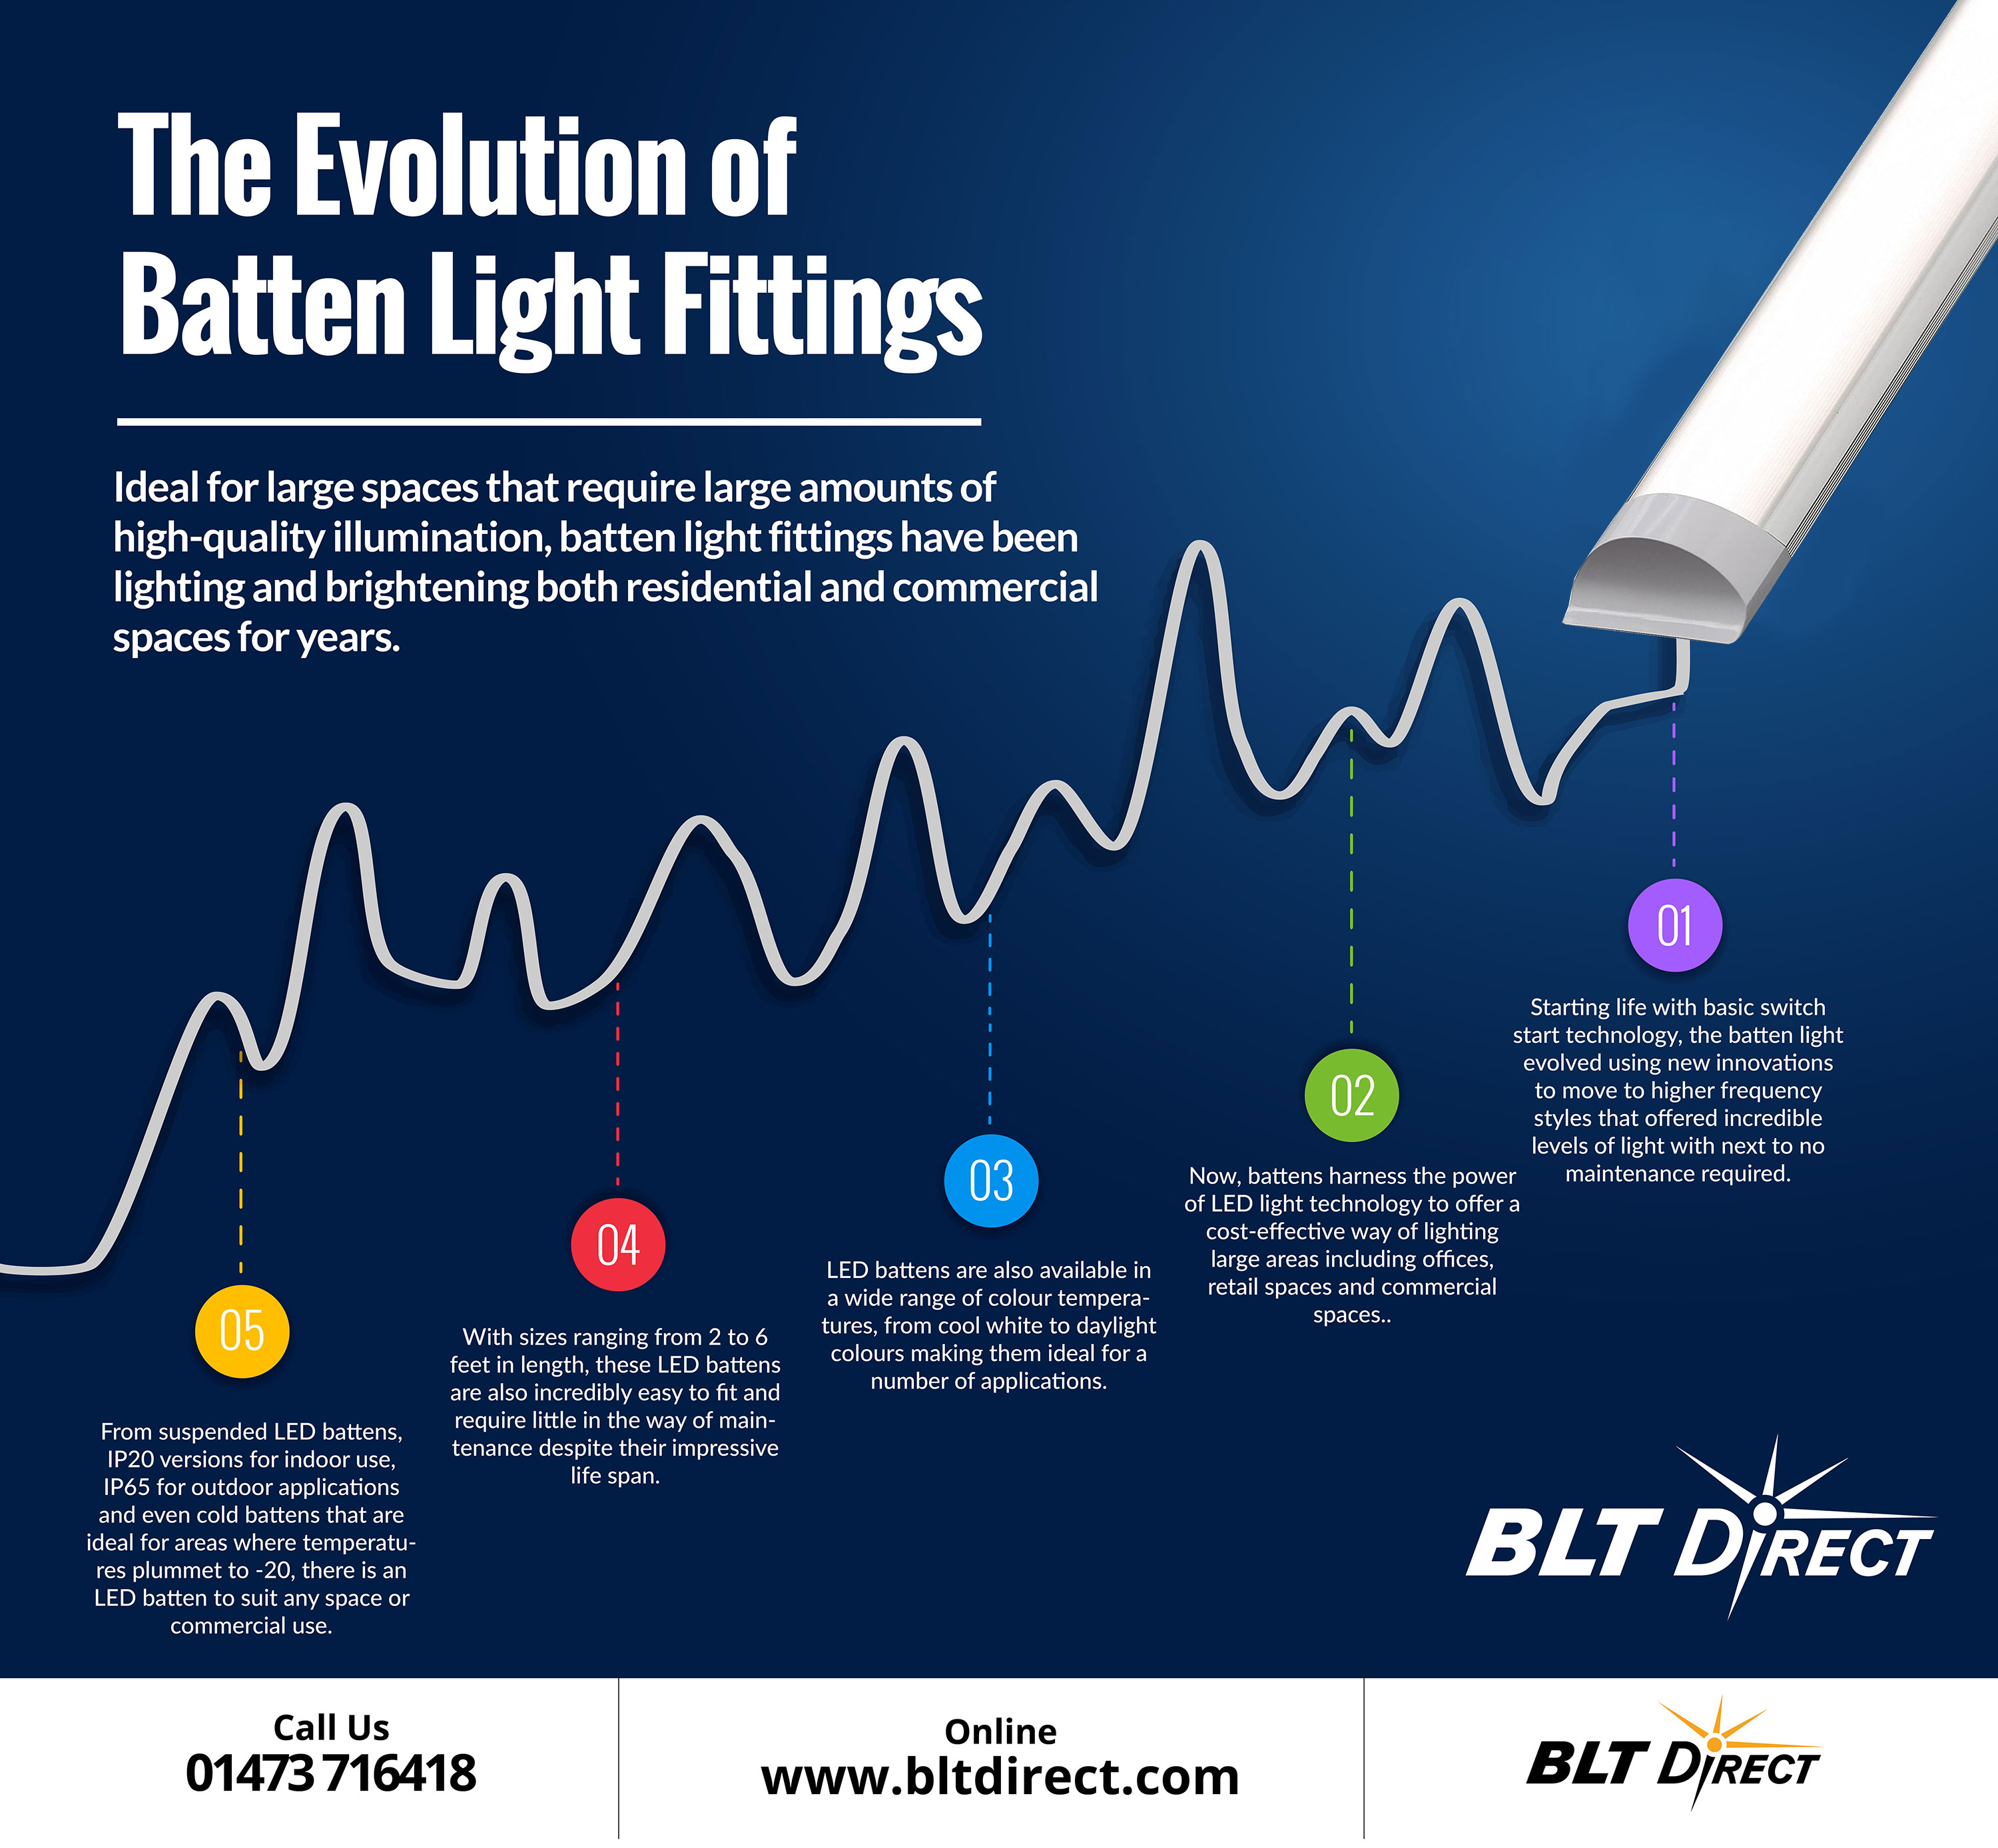 The Evolution of Batten Light Fittings